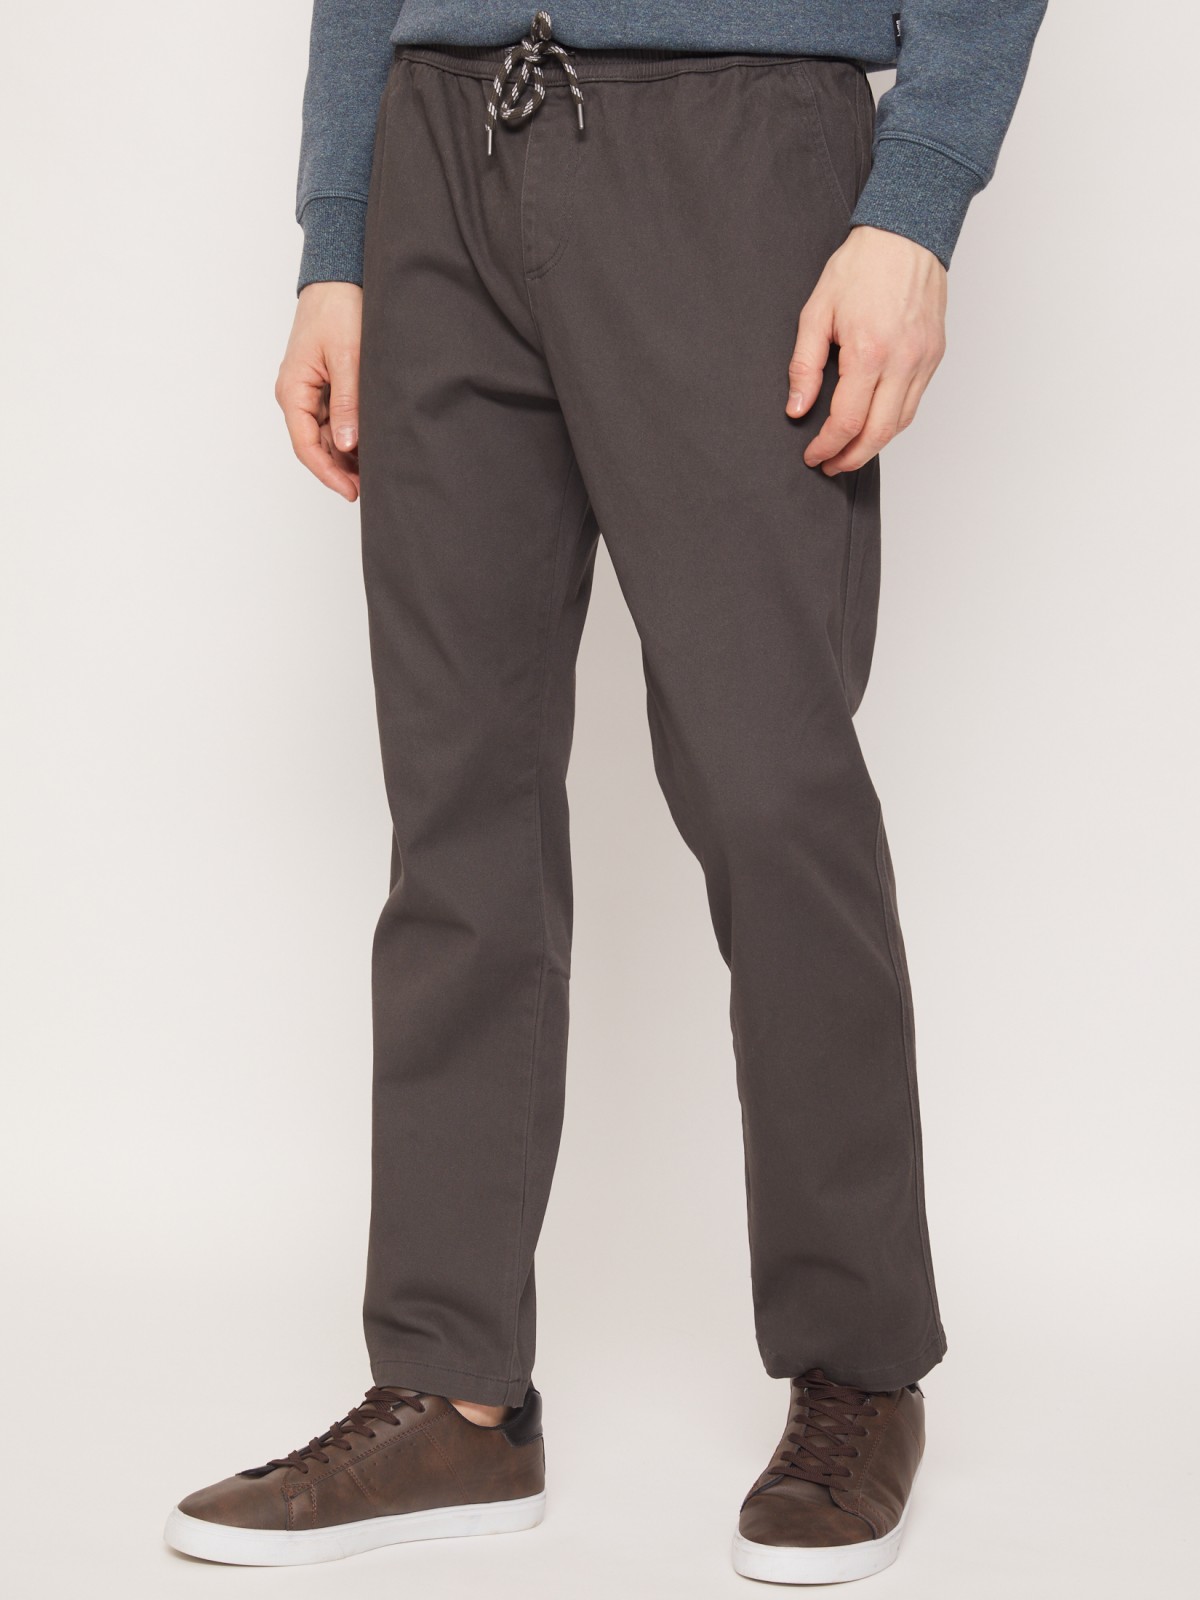 Прямые хлопковые брюки на резинке zolla 211317323012, цвет серый, размер 30 - фото 3